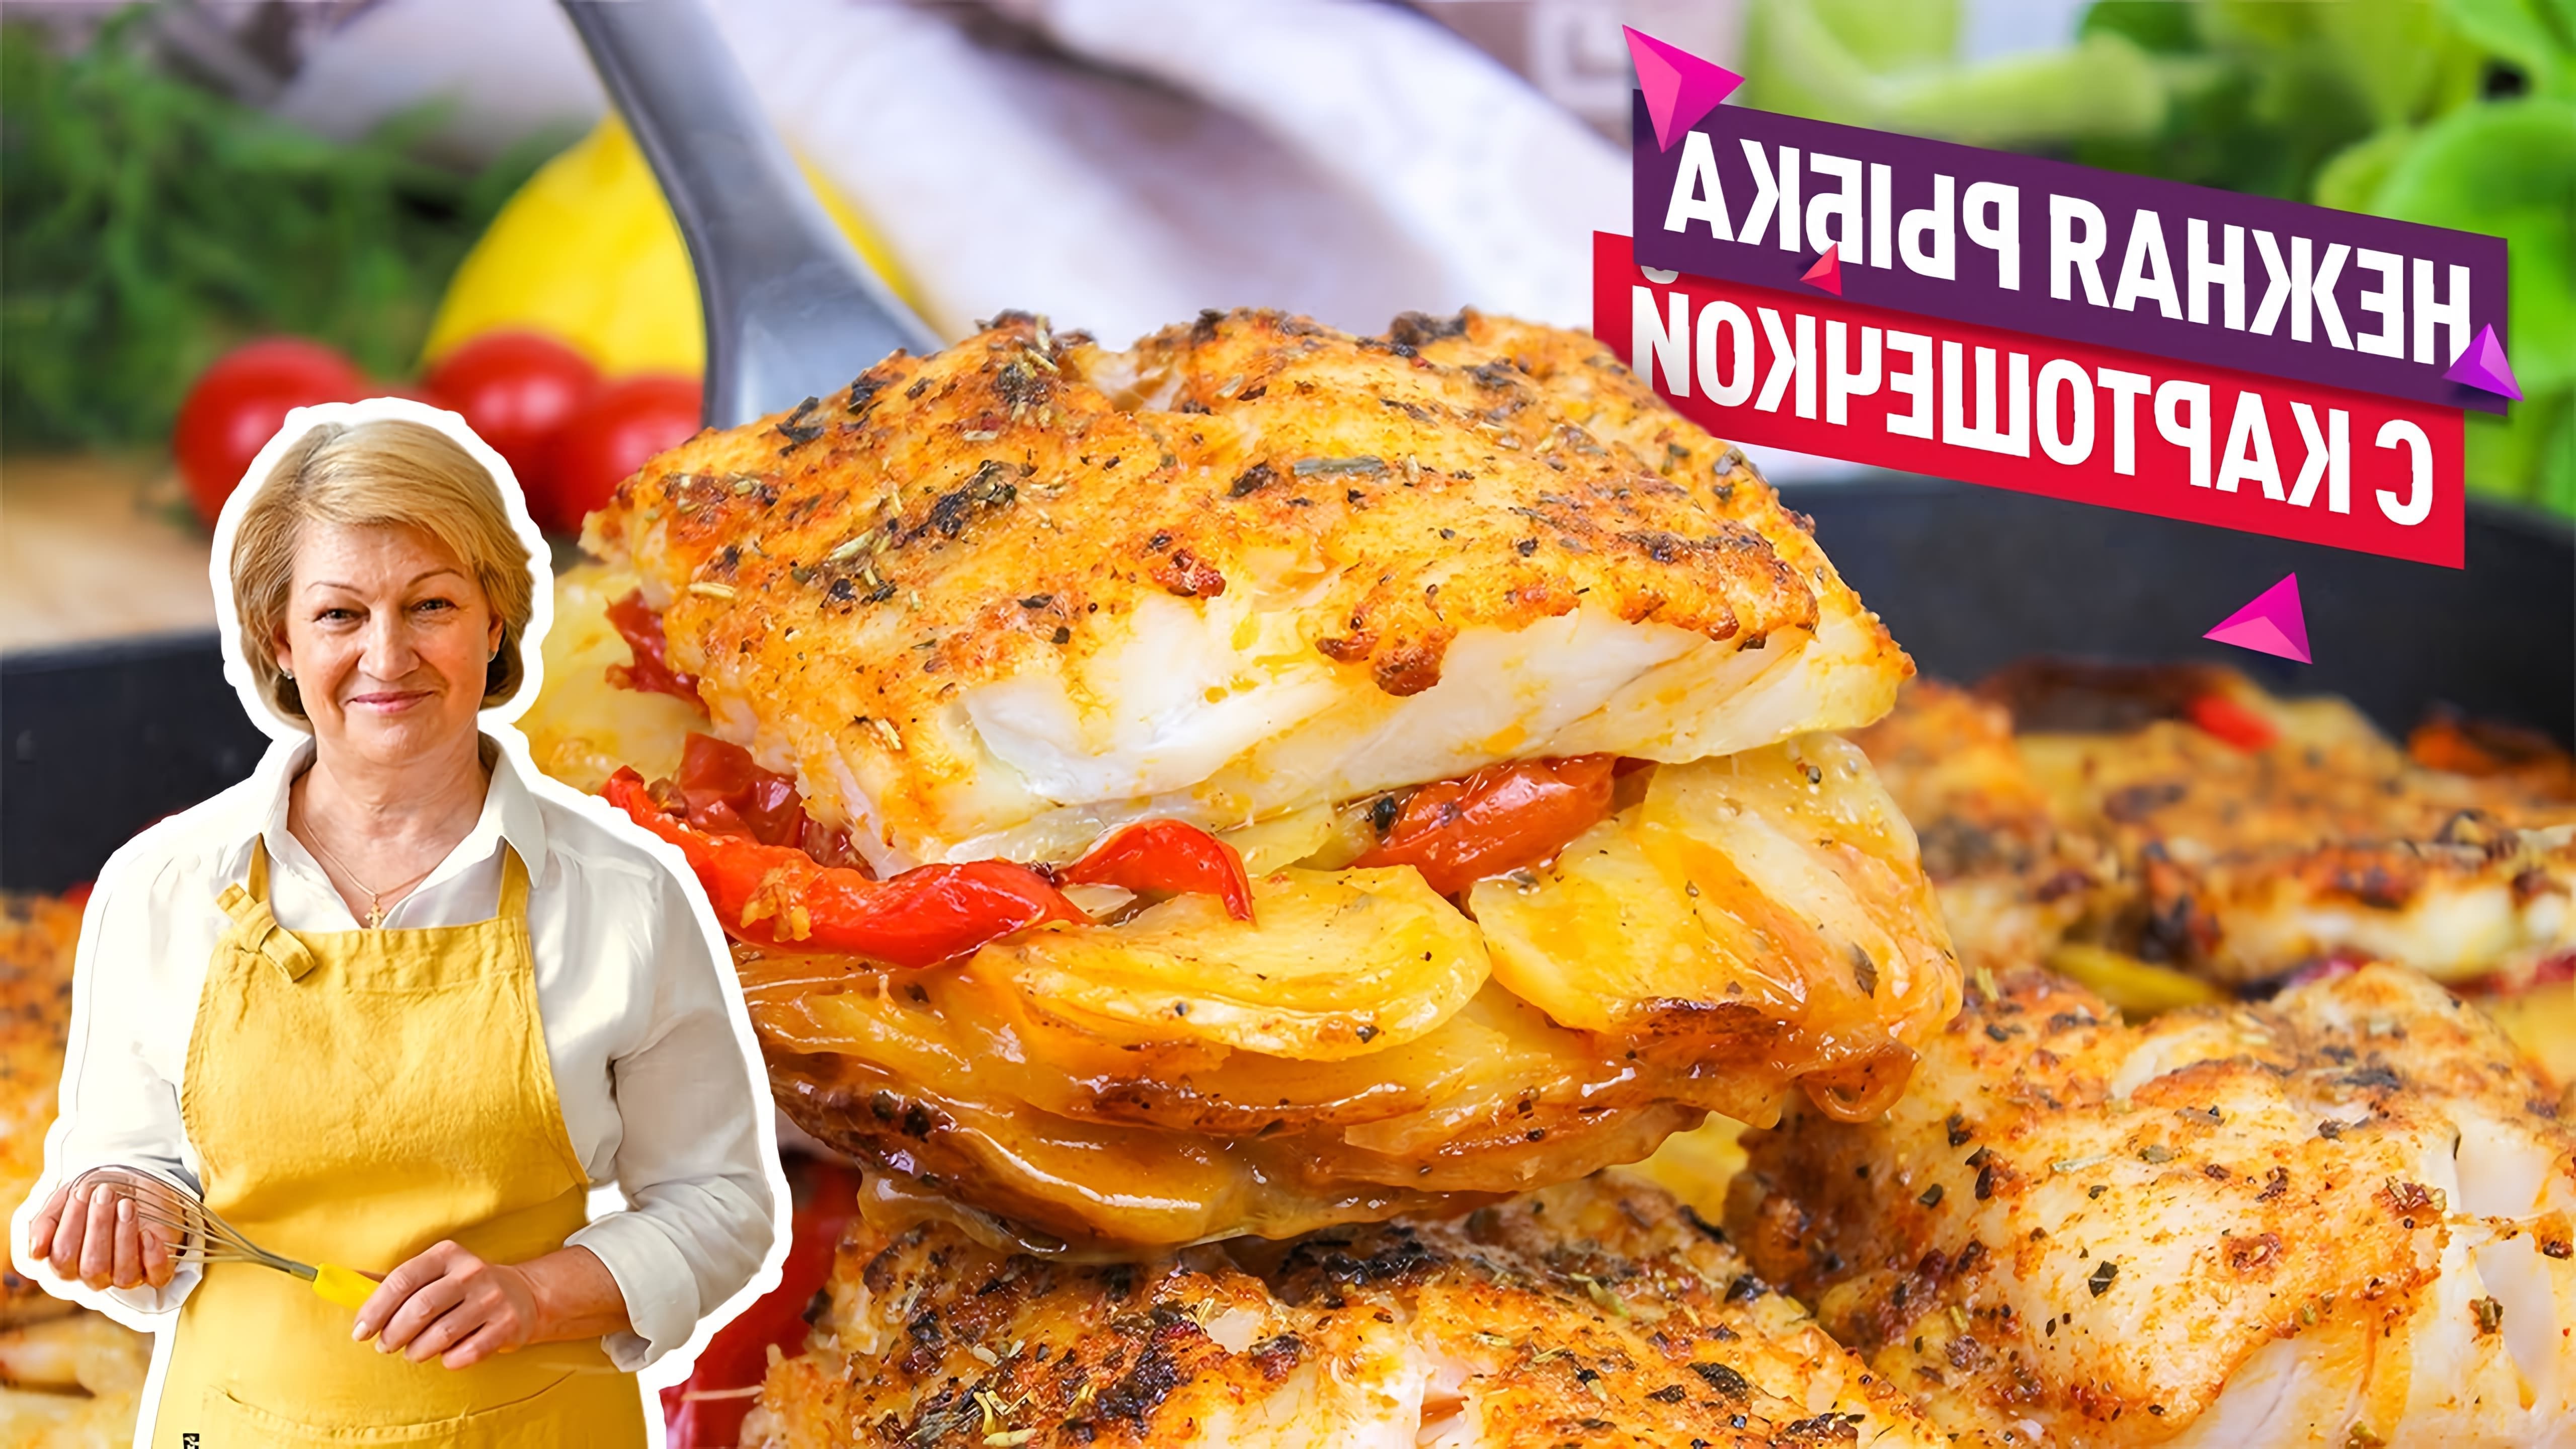 Видео как приготовить простое, но вкусное блюдо из запеченной рыбы и картофеля в духовке